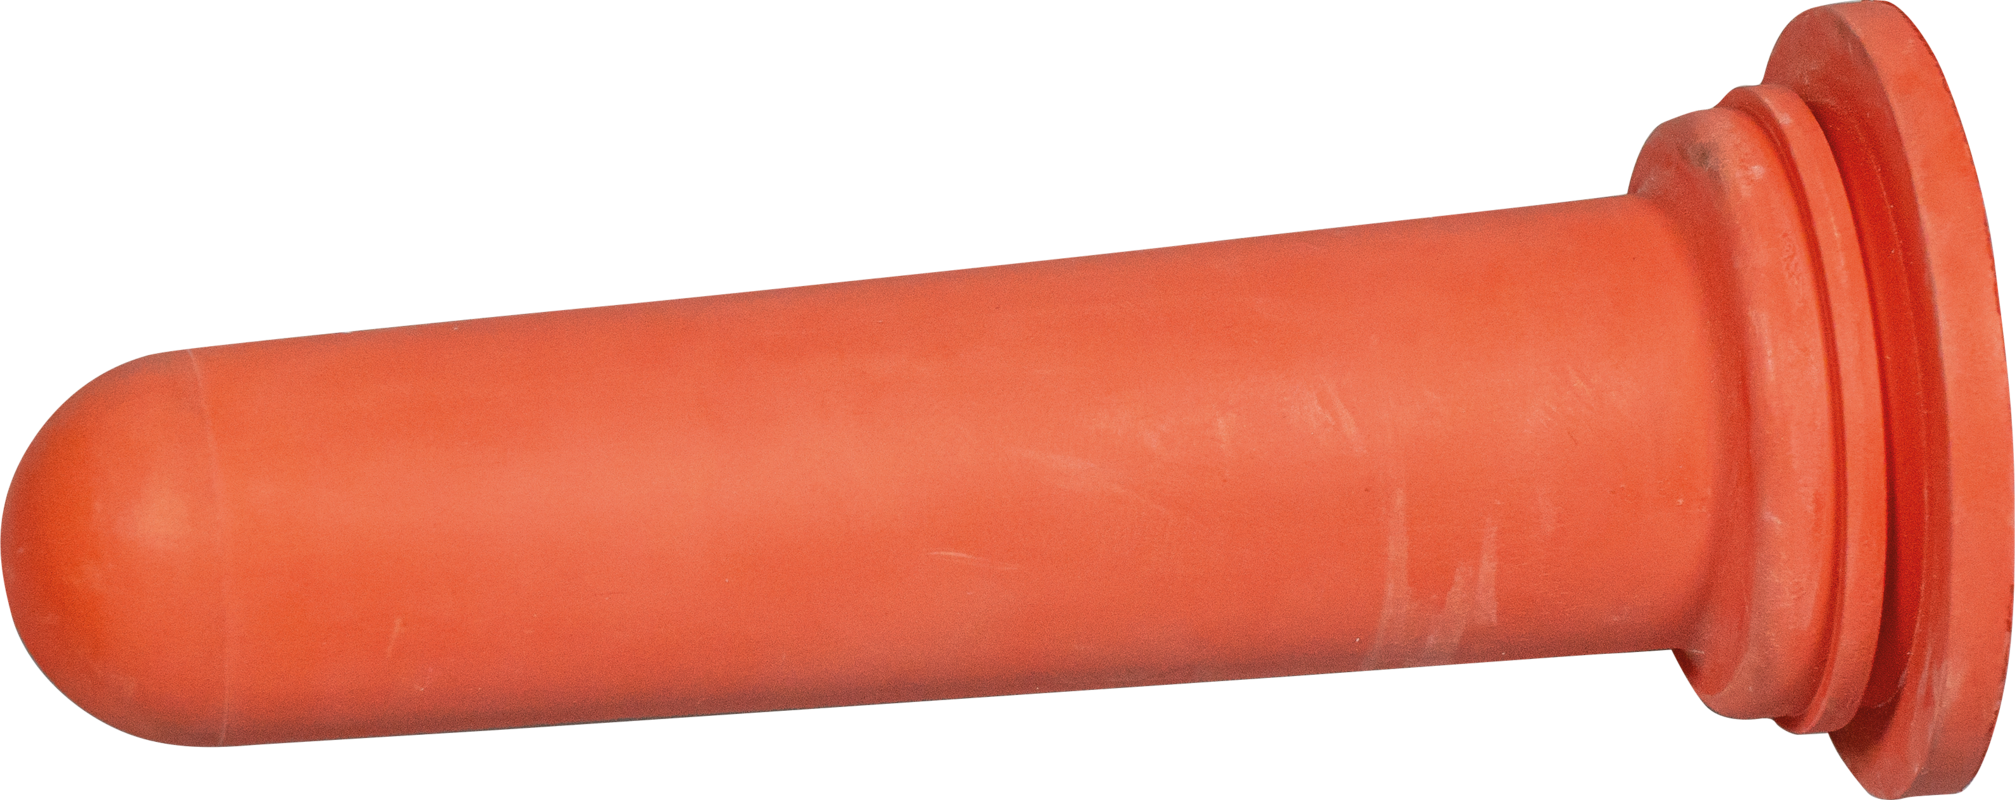 Sauger, mittel (rot) für 1-Click-Ventil für Nuckel-Tränkeeimer und Kälber-Tränkeflasche Profi